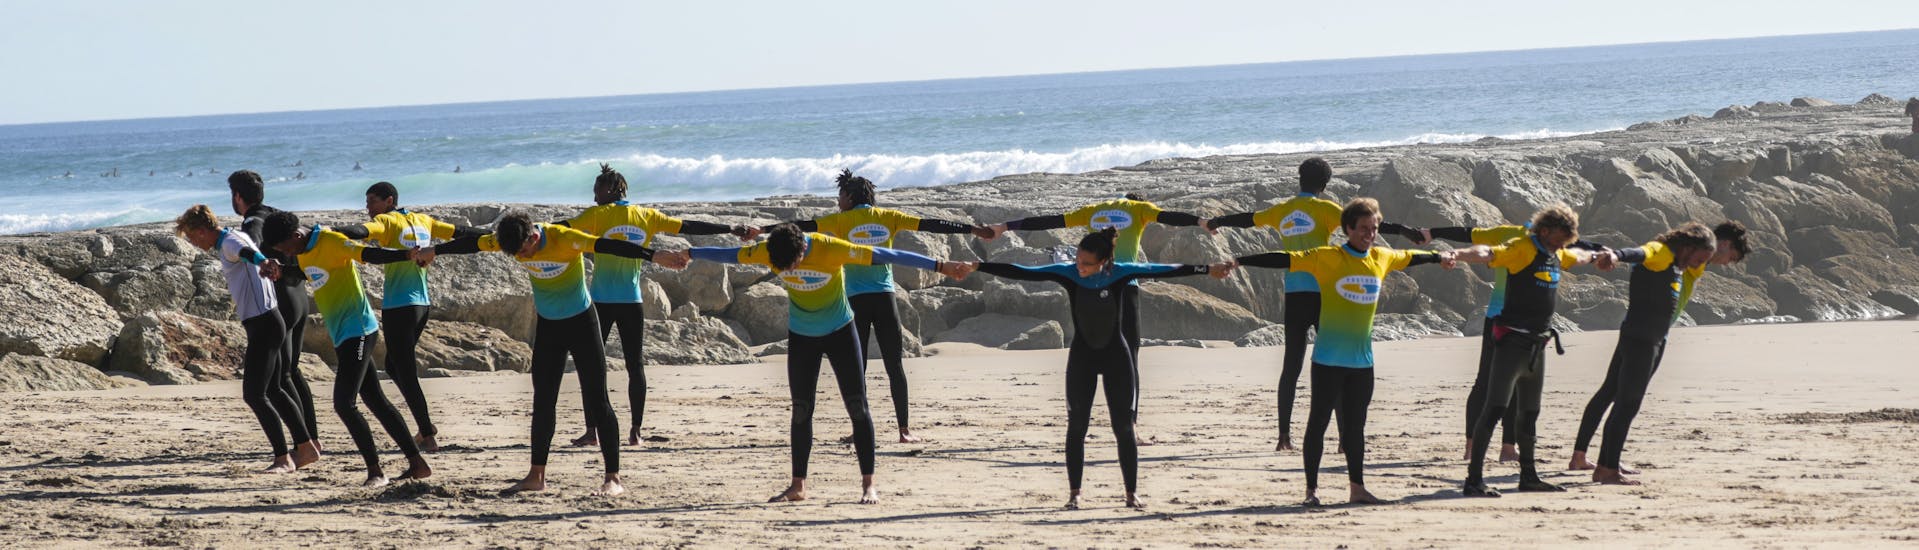 Curso de Surf en Costa da Caparica a partir de 6 años para todos los niveles.